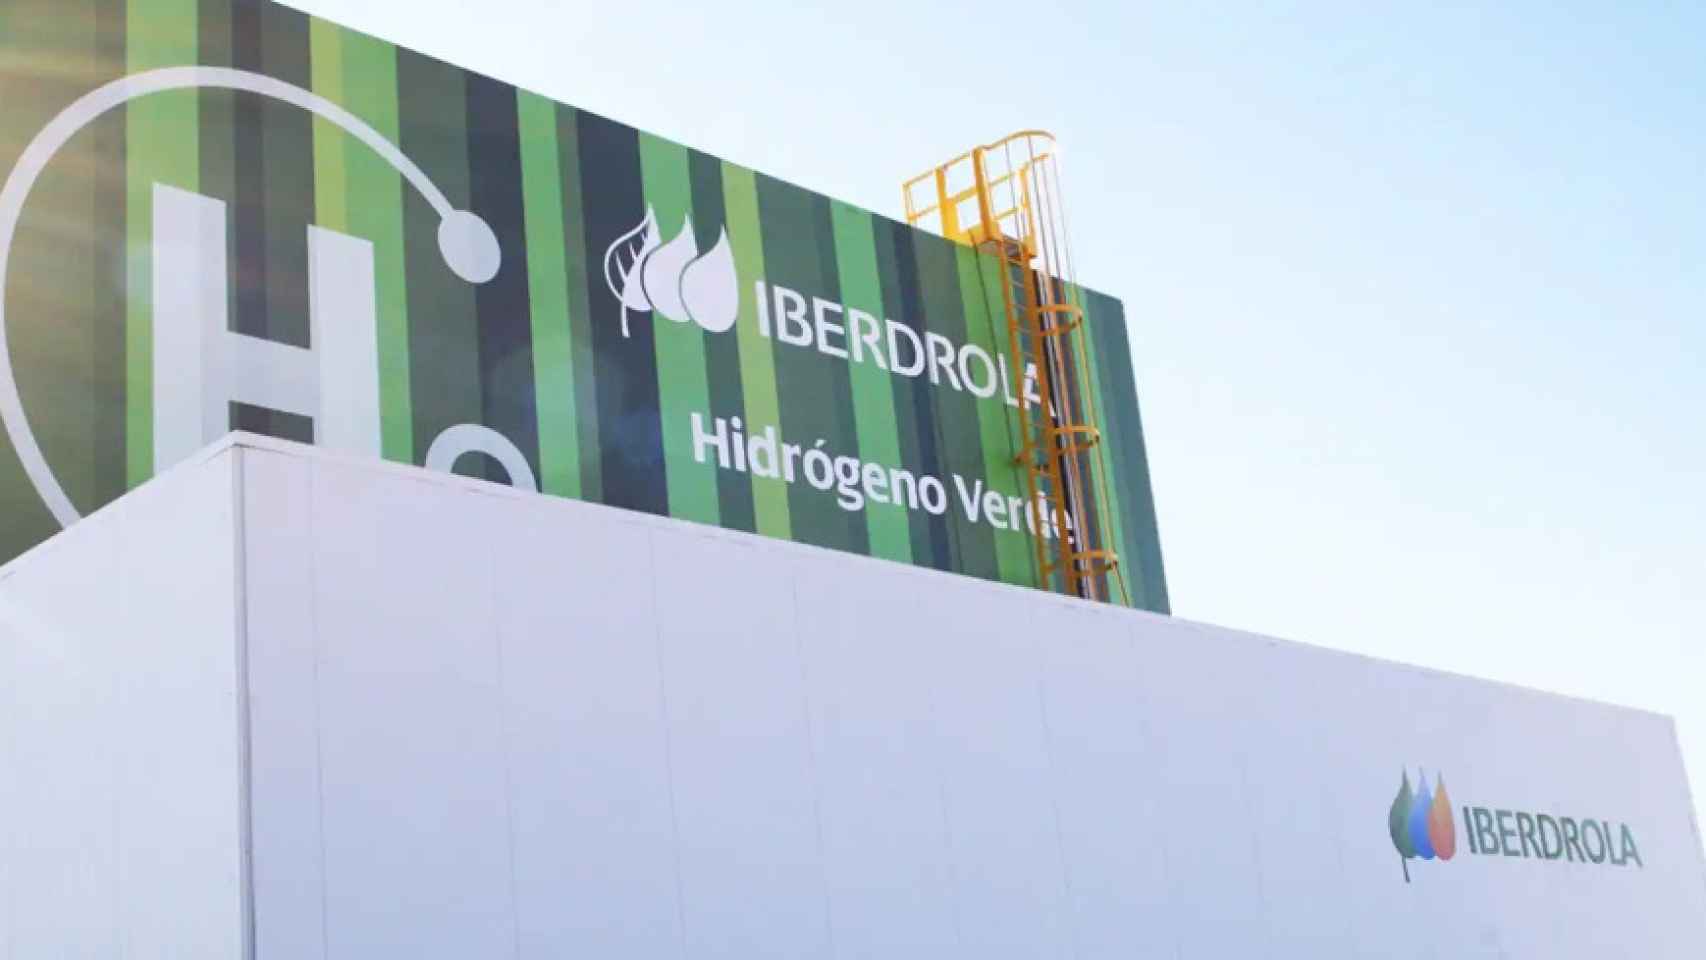 Planta de hidrógeno verde de Iberdrola en Puertollano.